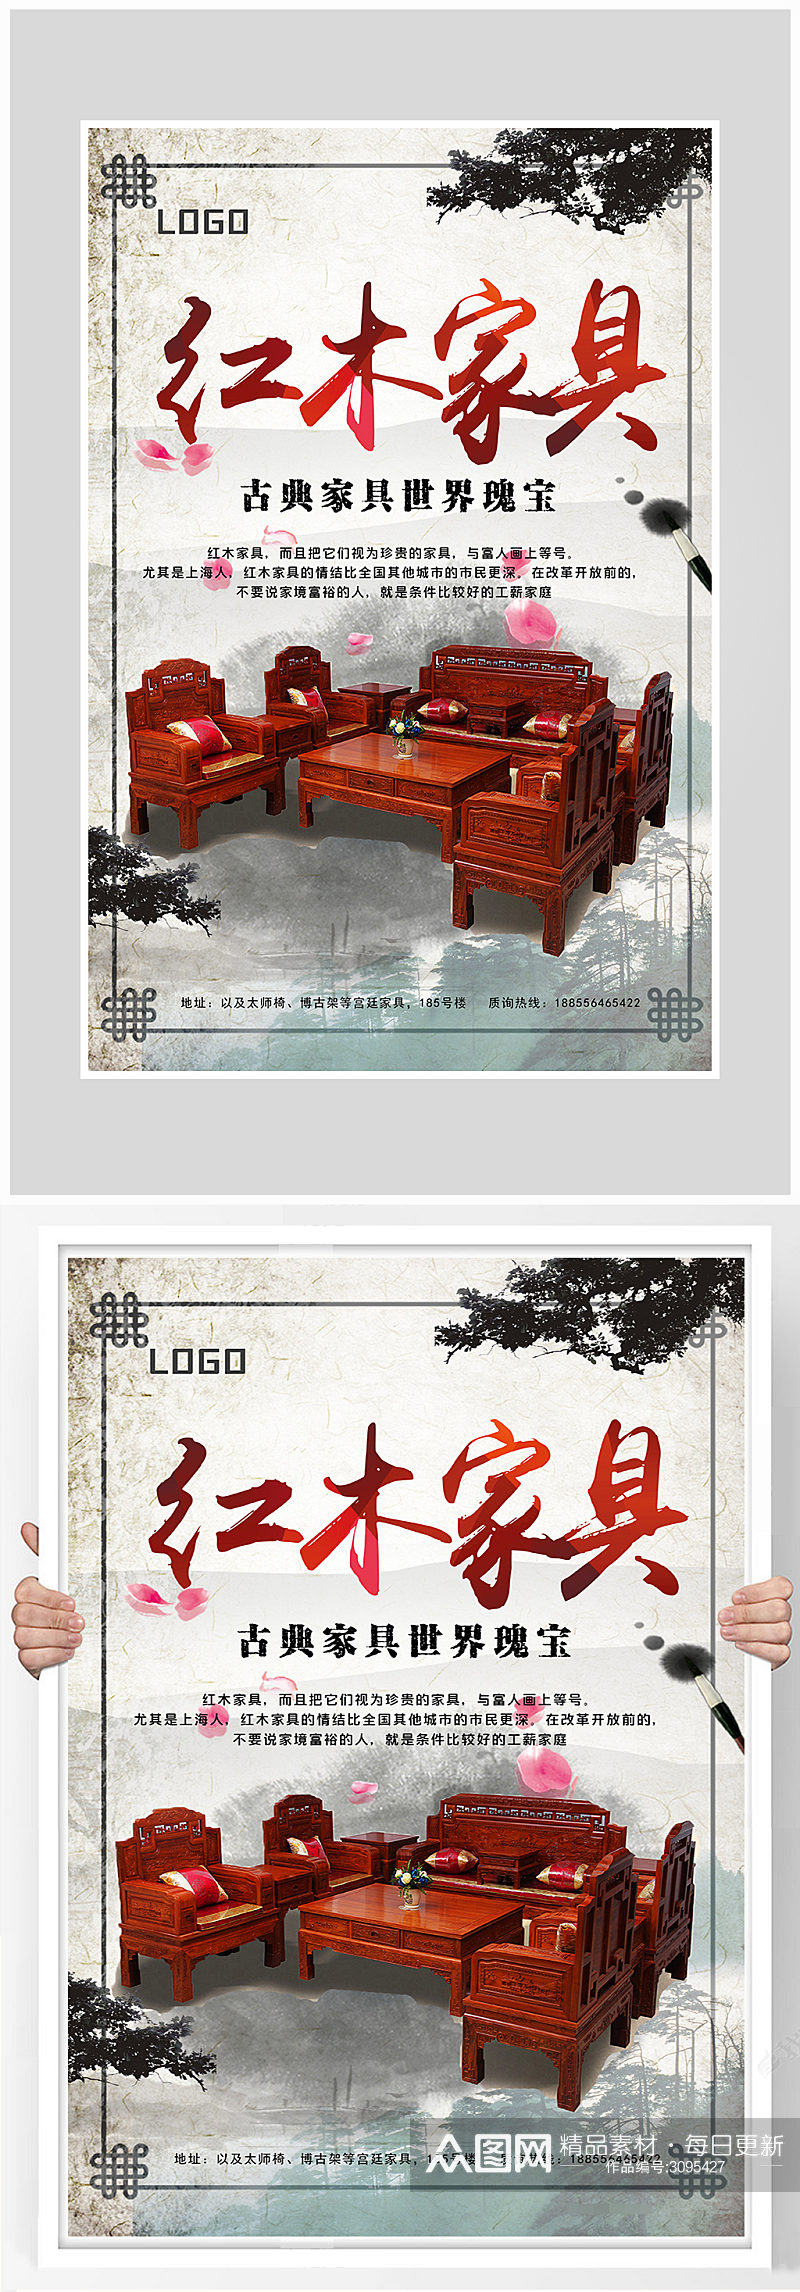 古典时尚红木家具海报设计素材